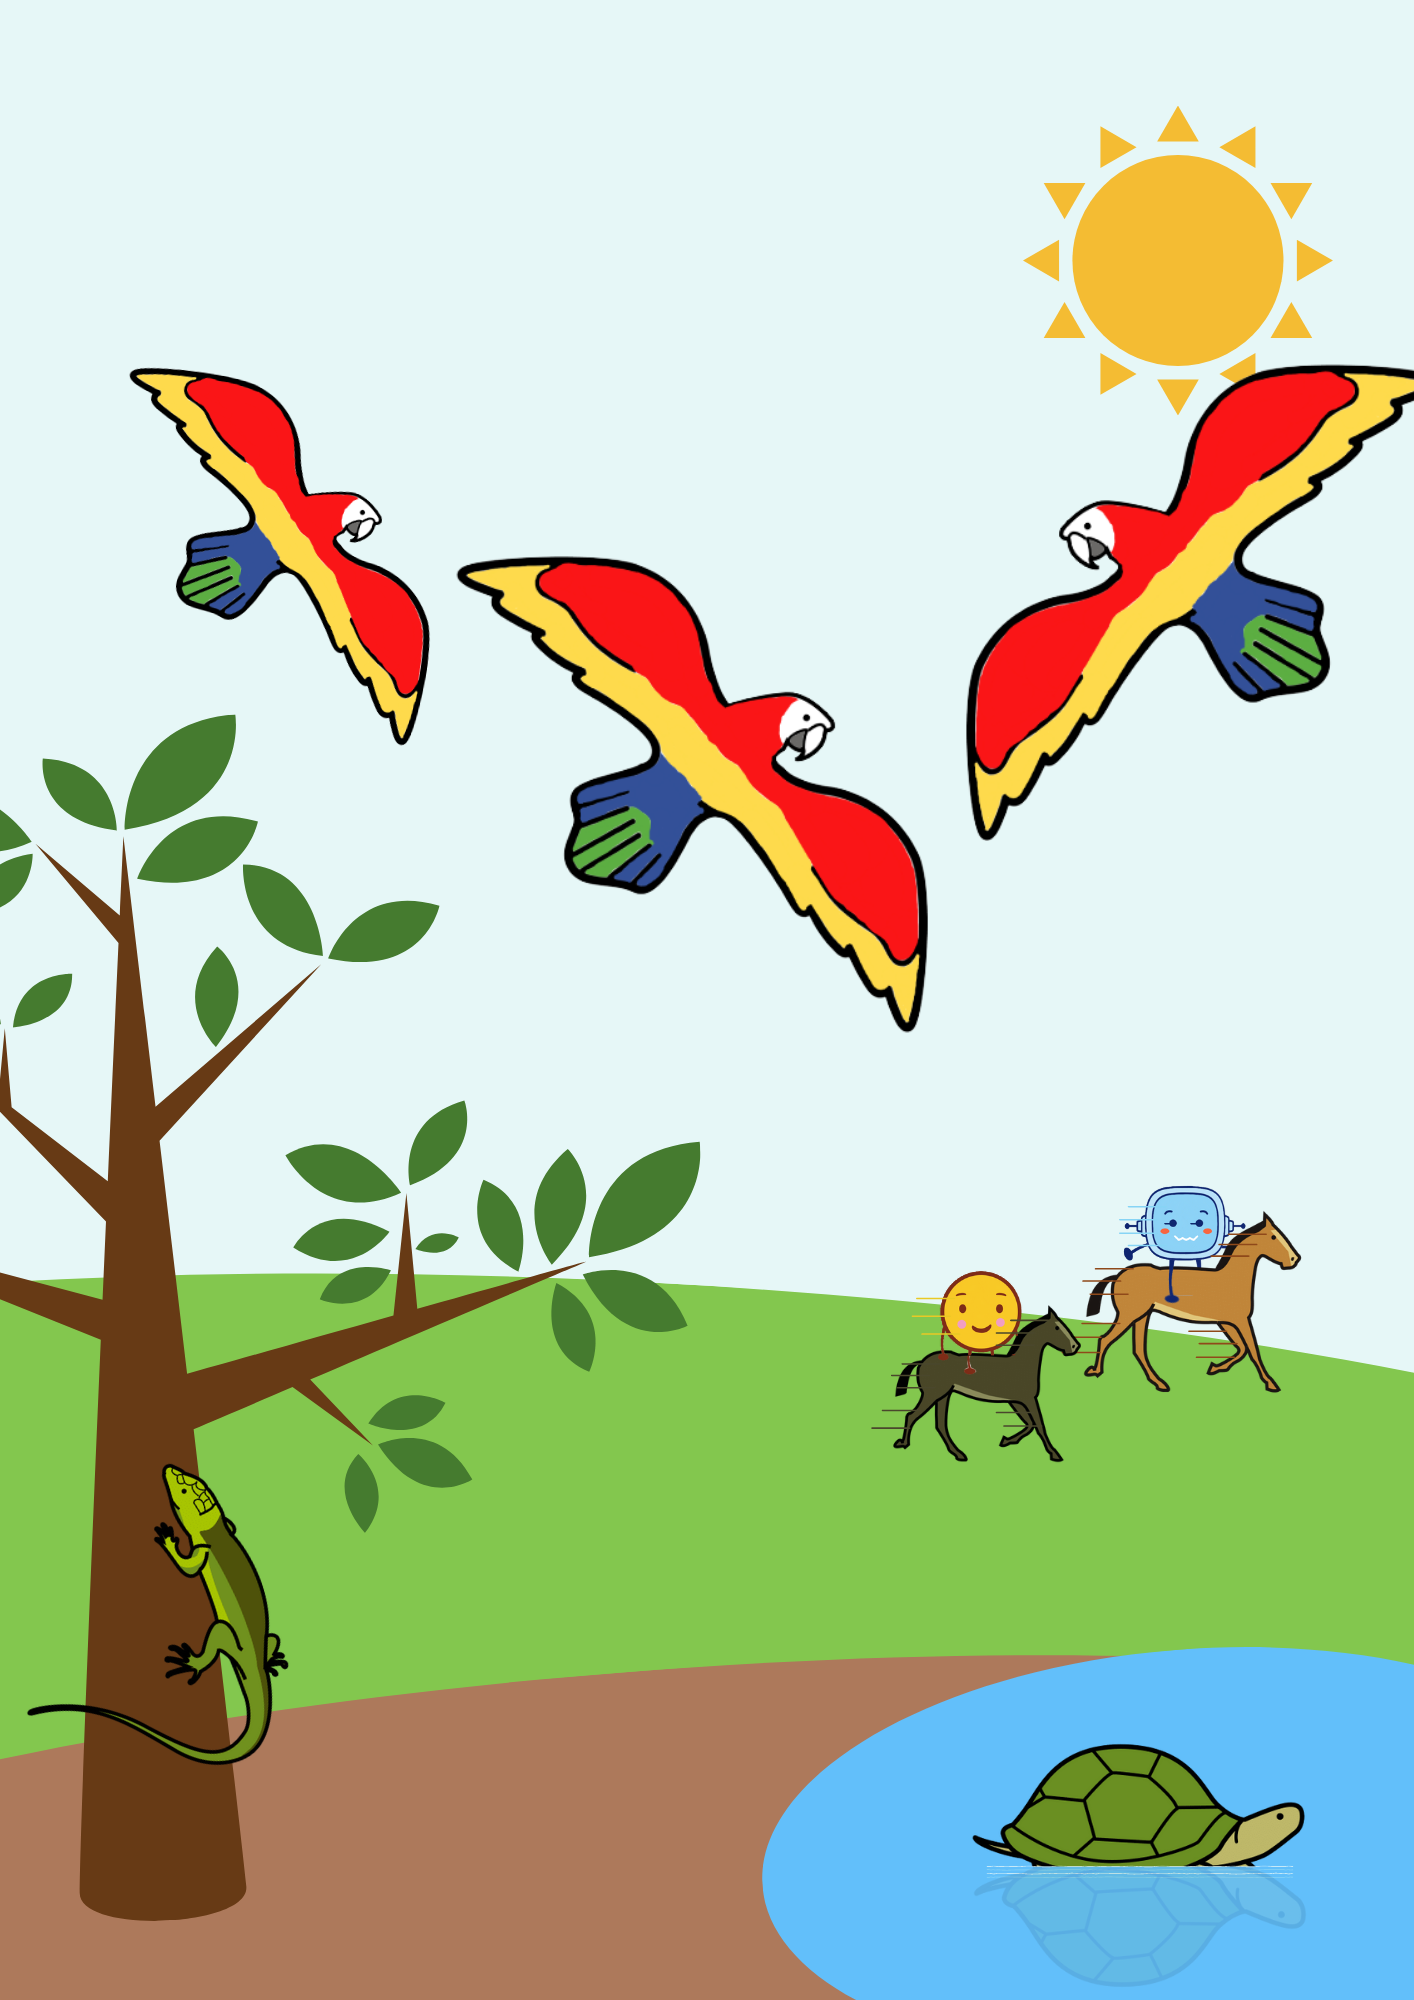 La imagen muestra a tres loros volando, una lagartija escalando un árbol, una tortuga nadando y dos caballos corriendo.